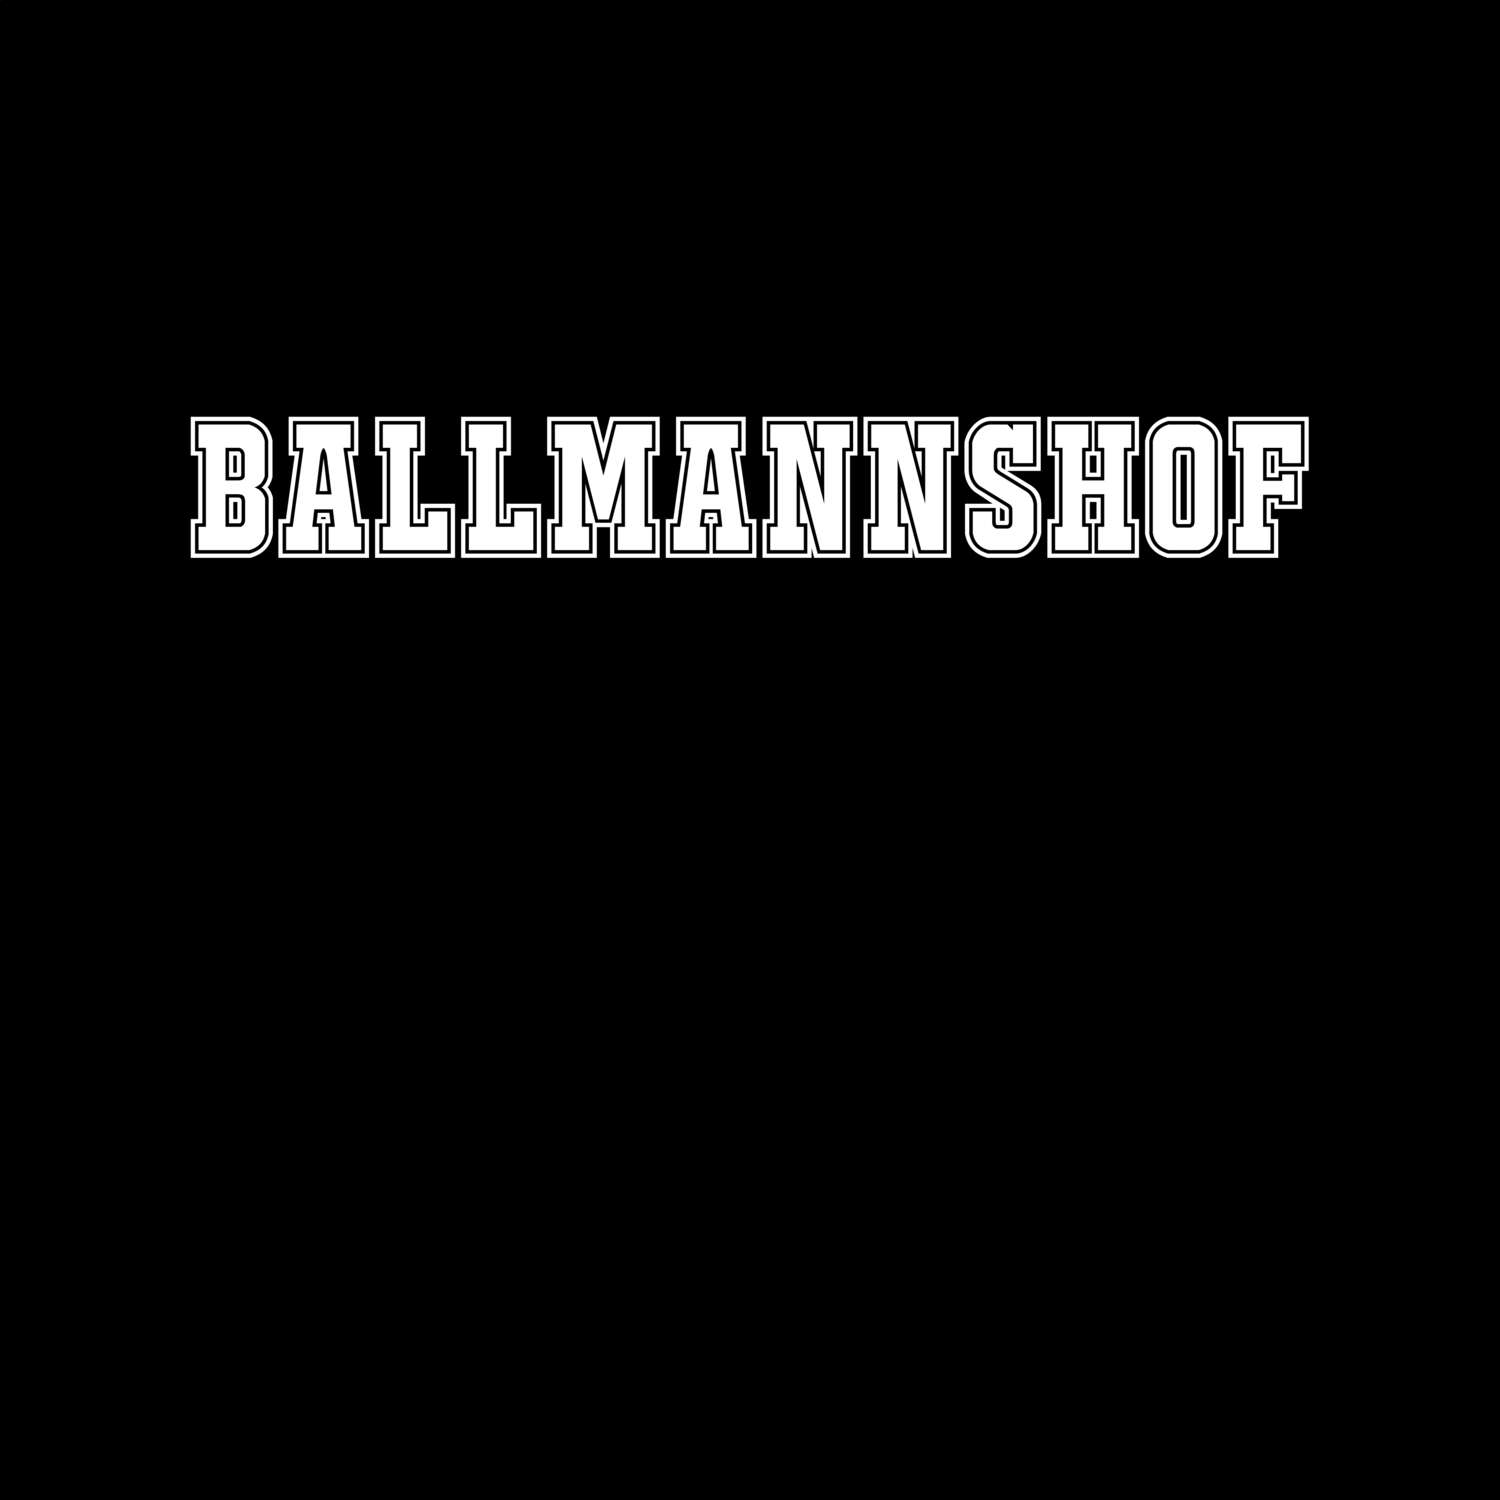 Ballmannshof T-Shirt »Classic«